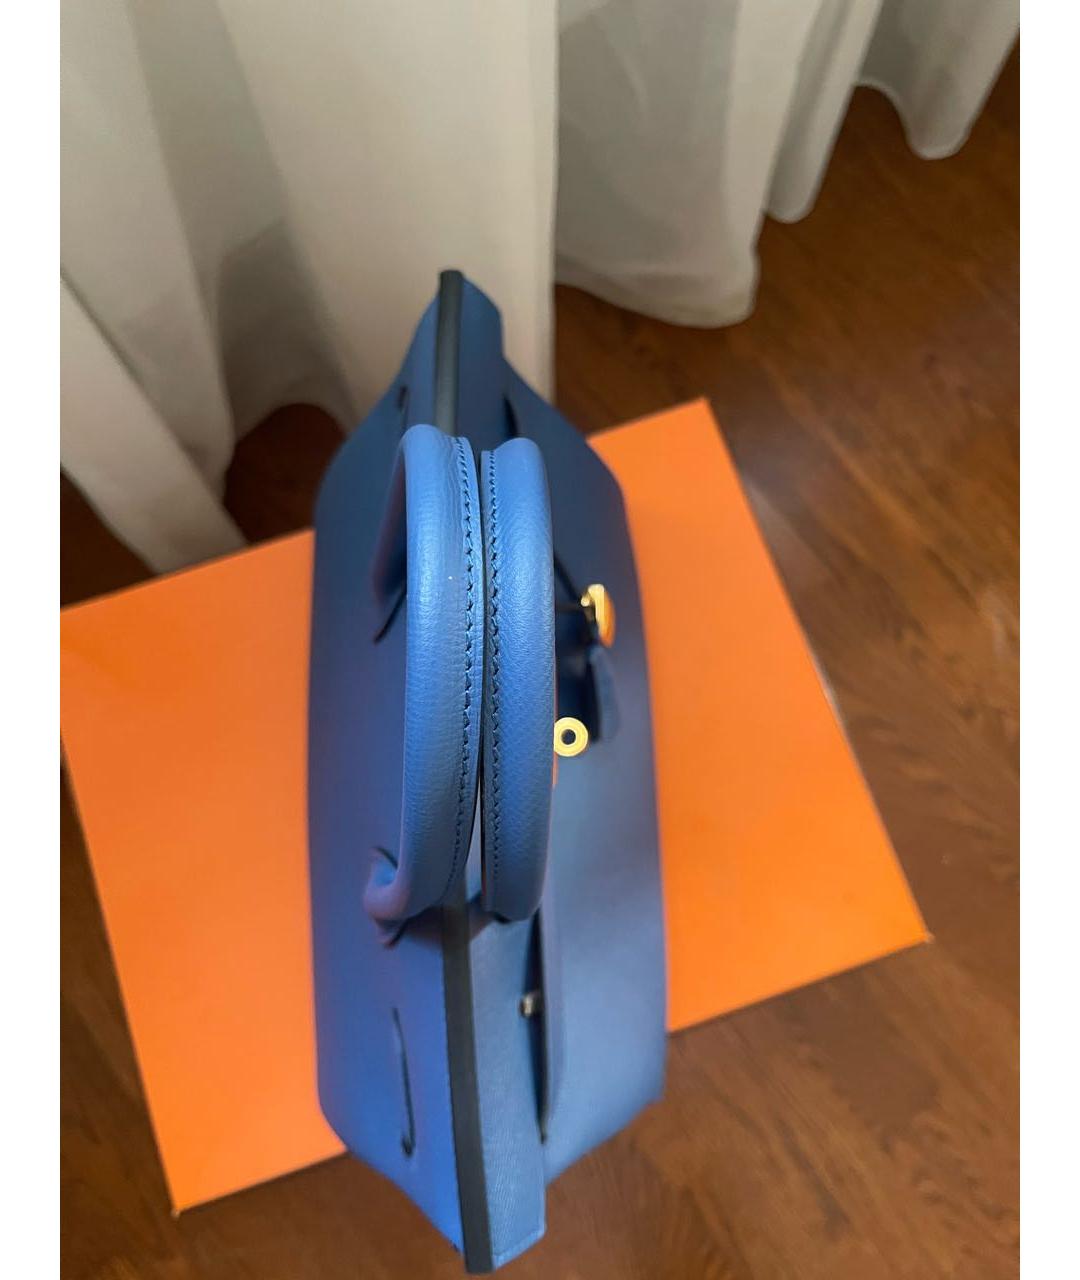 HERMES PRE-OWNED Синяя кожаная сумка с короткими ручками, фото 4